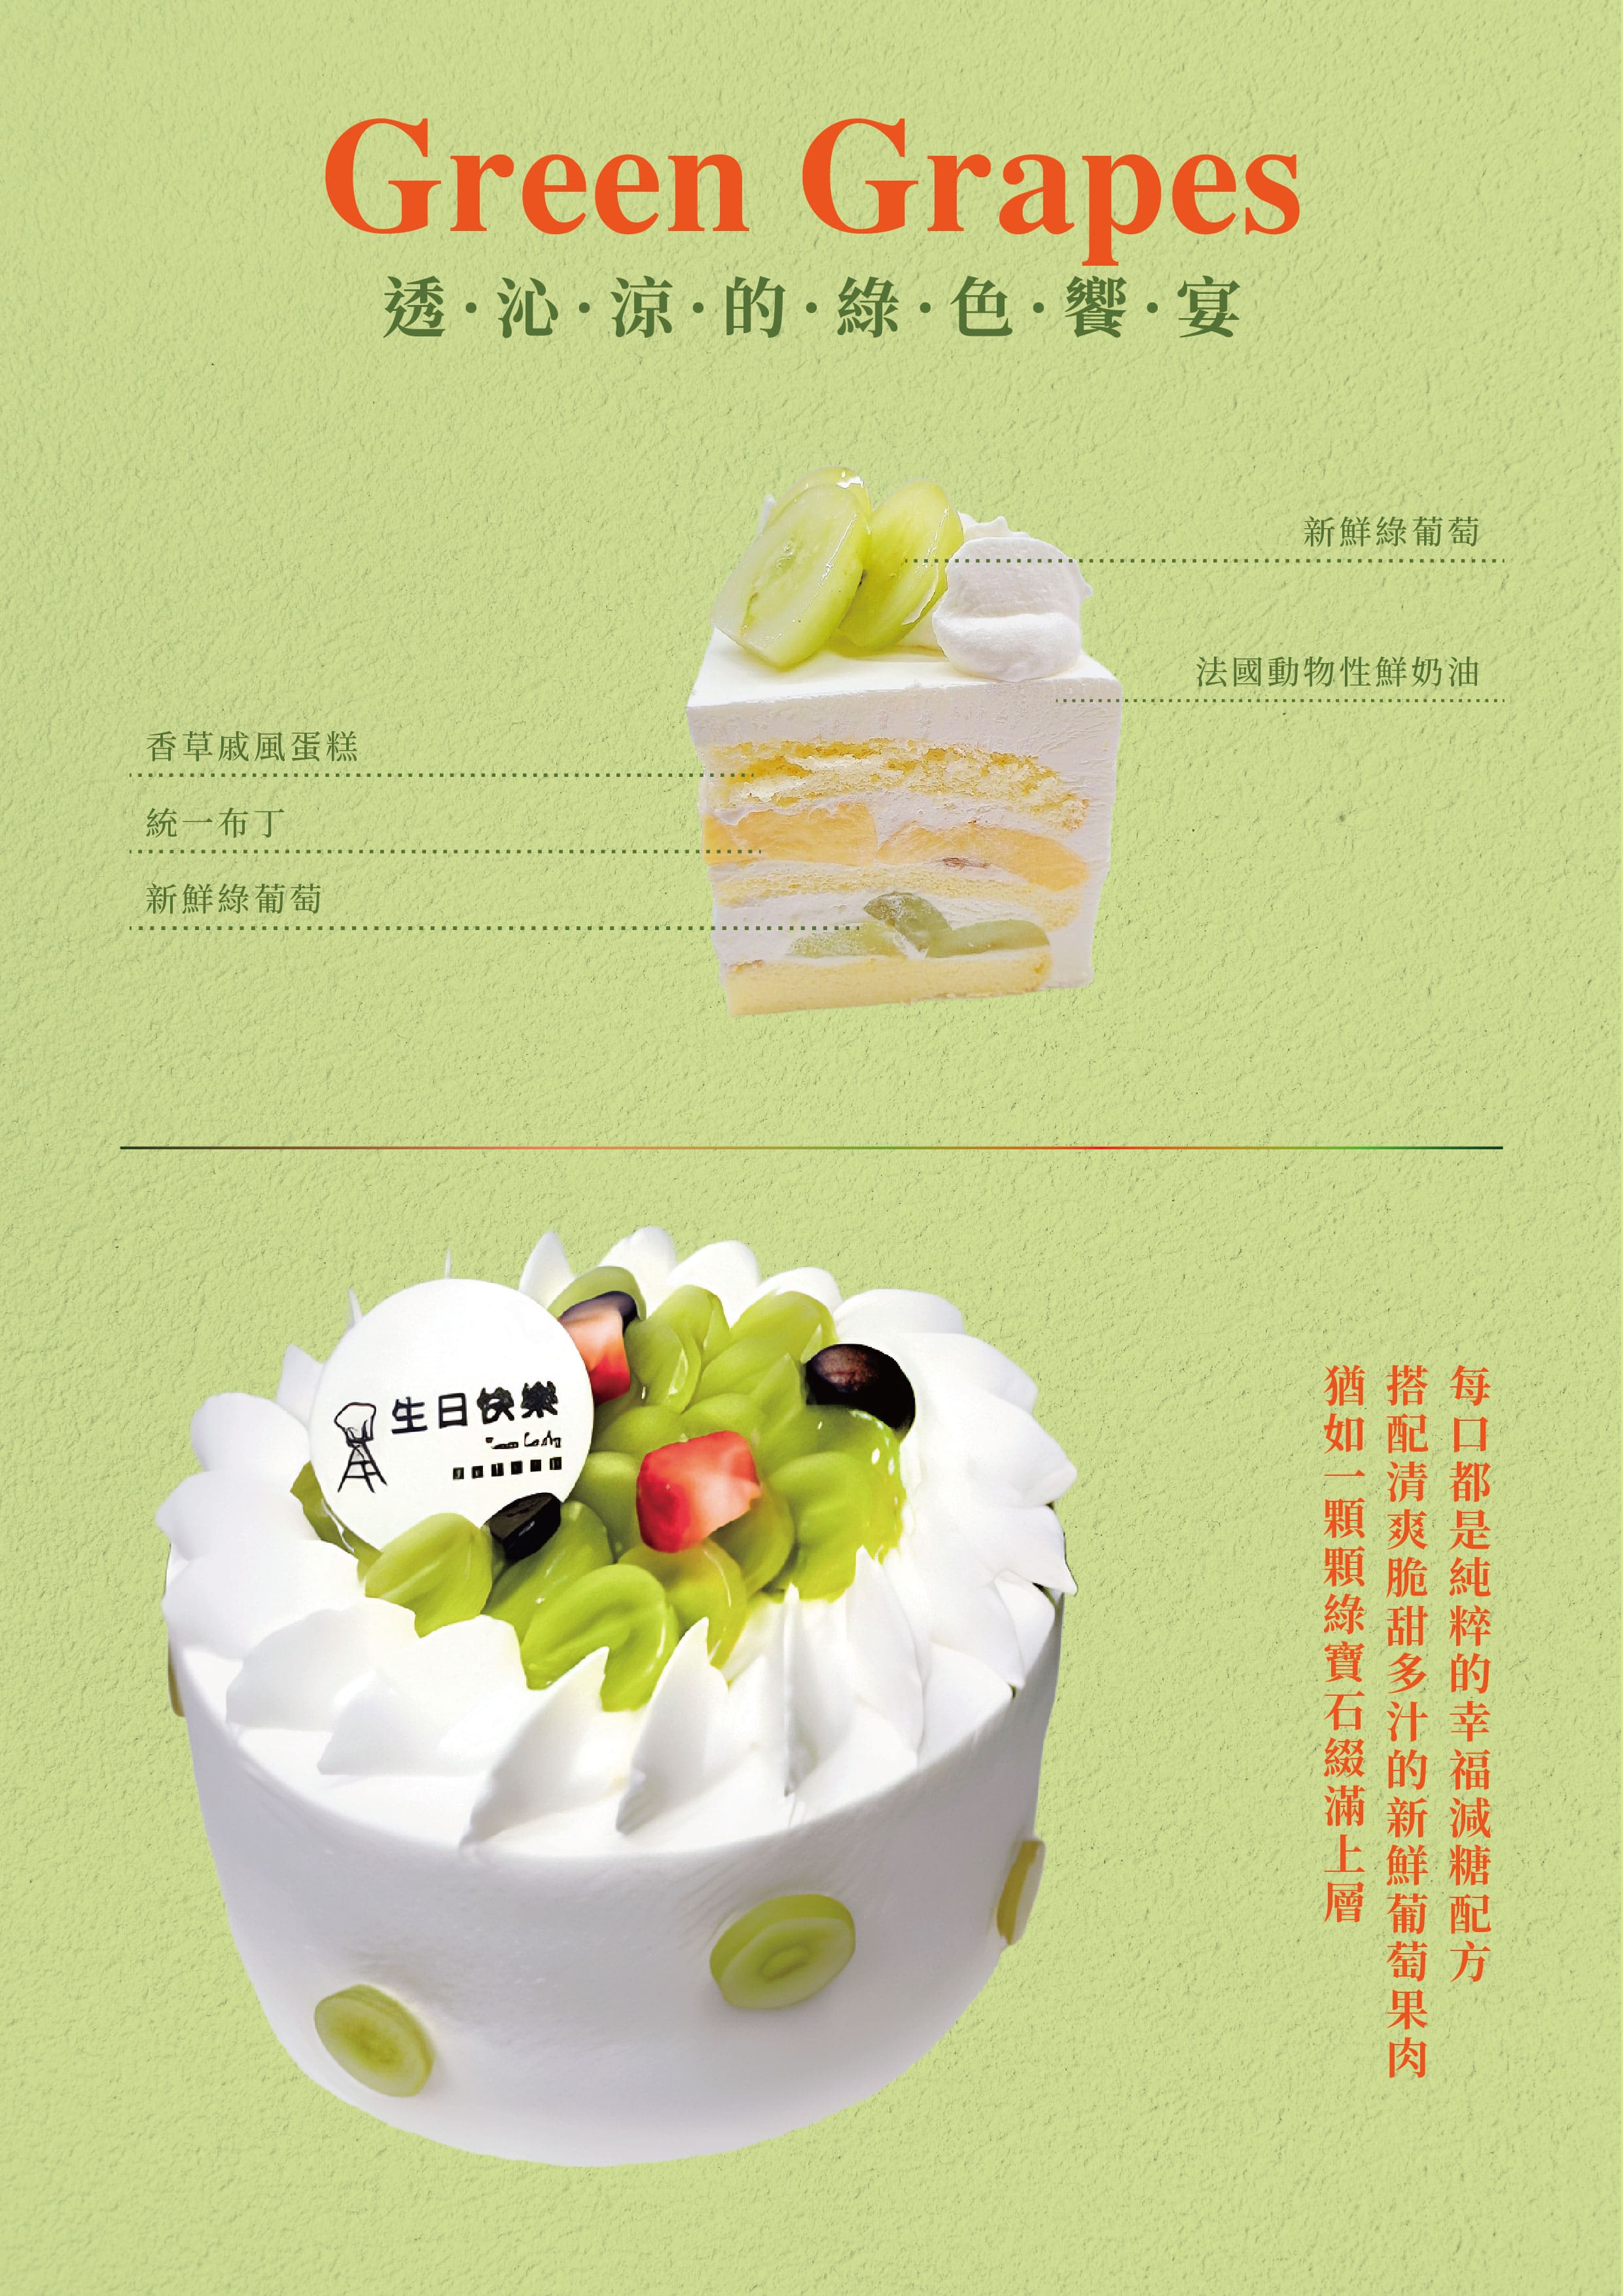 綠葡萄蛋糕-綠葡萄鮮奶油蛋糕-永和蛋糕推薦-中和蛋糕推薦